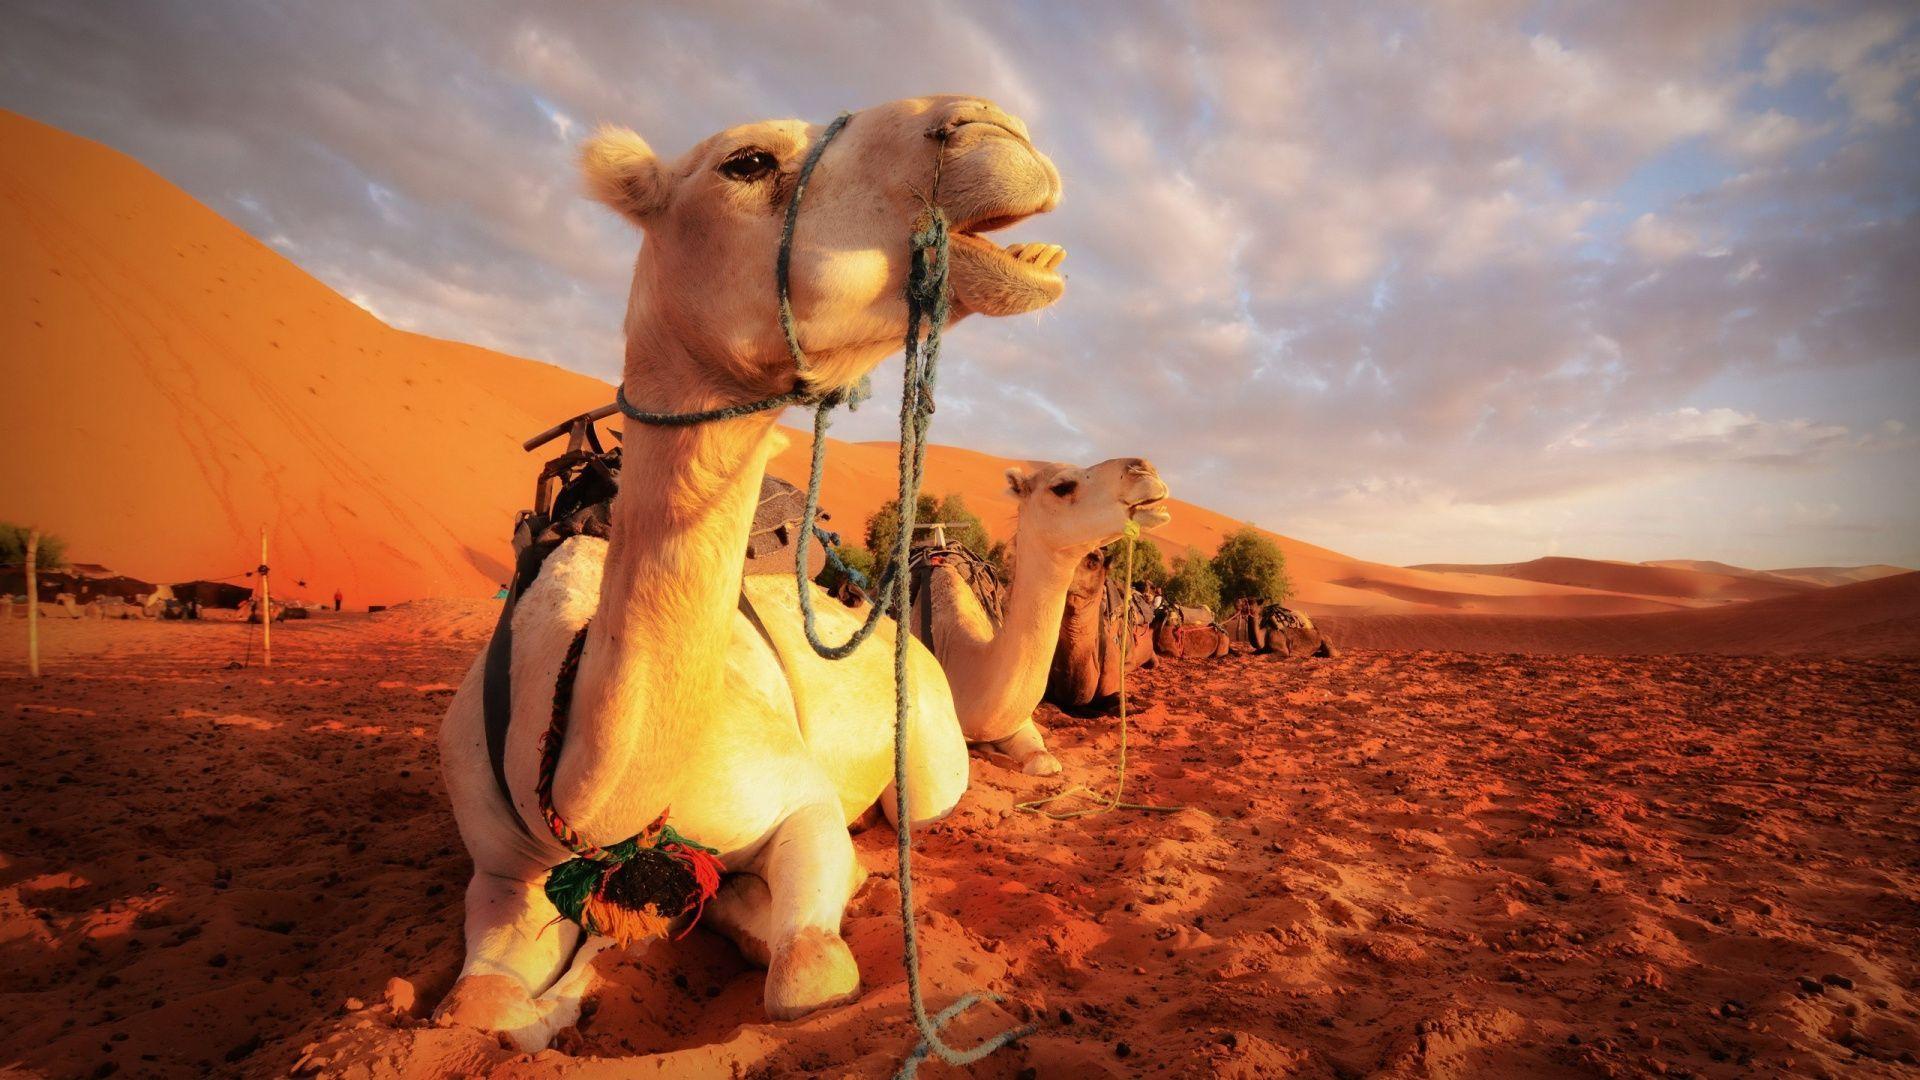 HD wallpaper: Camels, Desert, Sunset | Wallpaper Flare